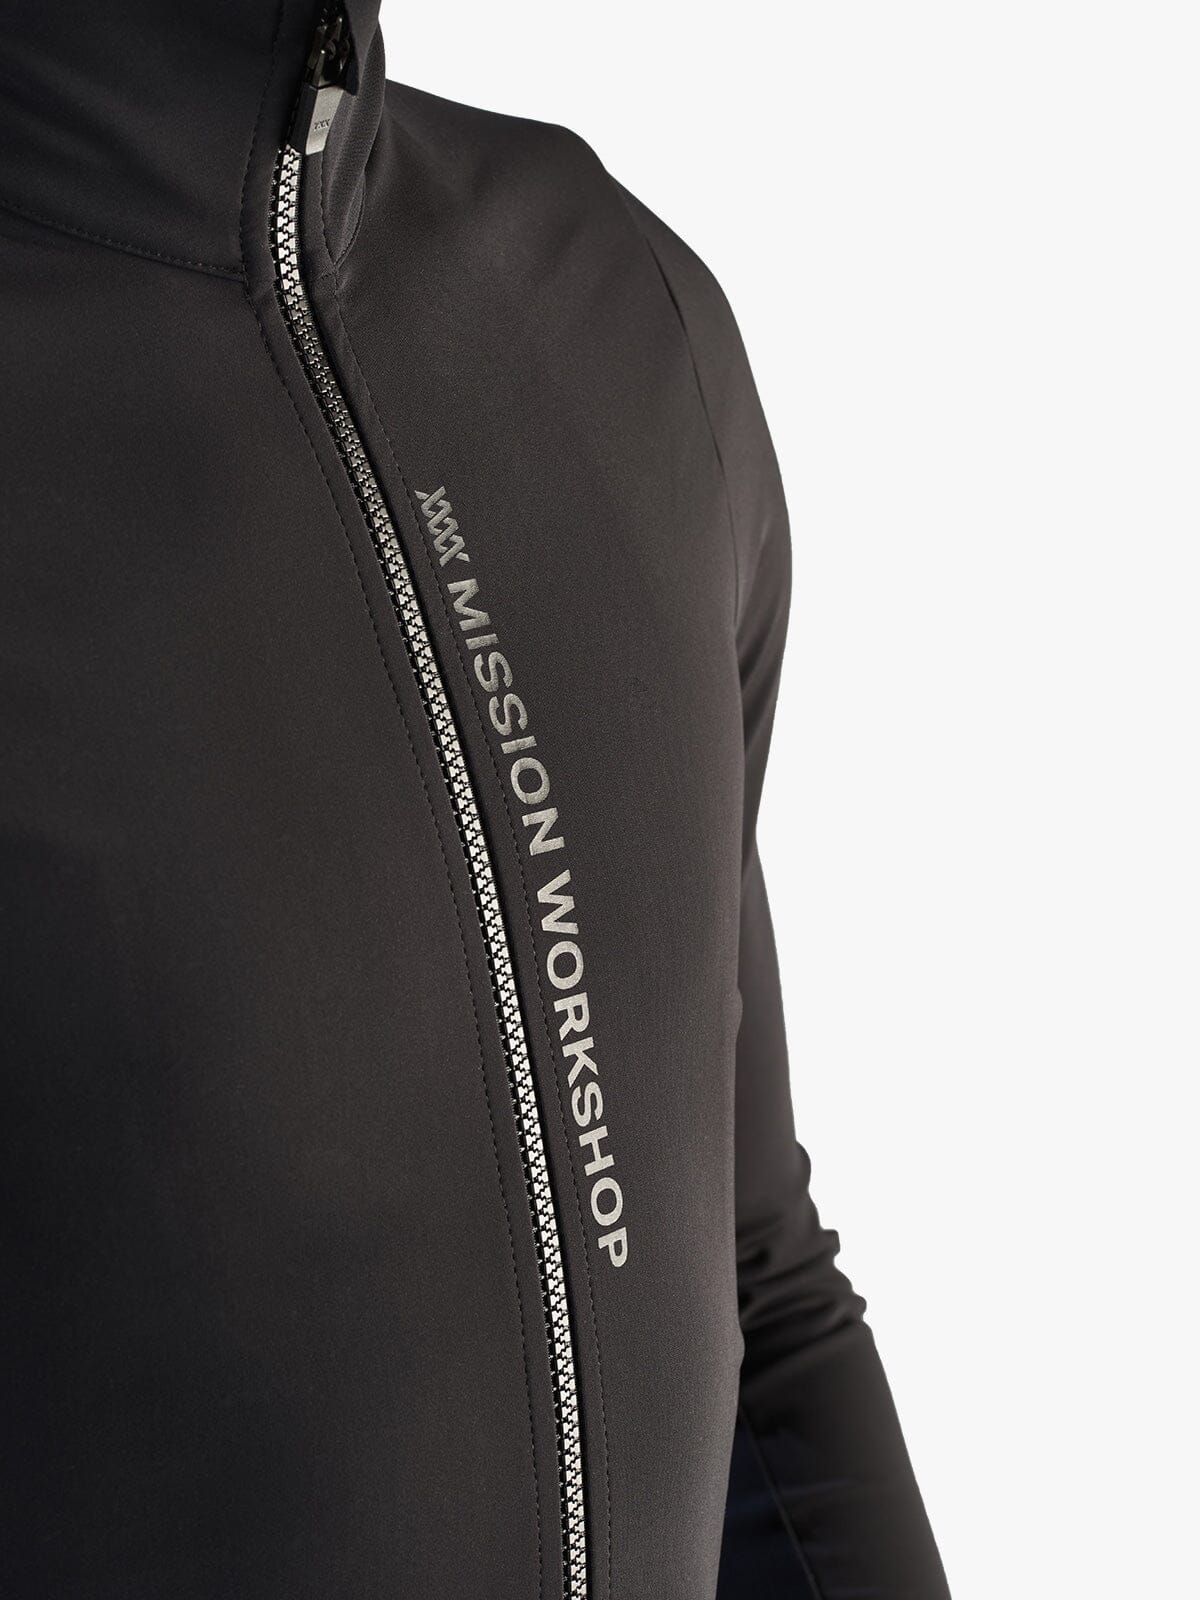 Range Jacket Men's von Mission Workshop - Wetterfeste Taschen & Technische Bekleidung - San Francisco & Los Angeles - Für die Ewigkeit gebaut - Garantiert